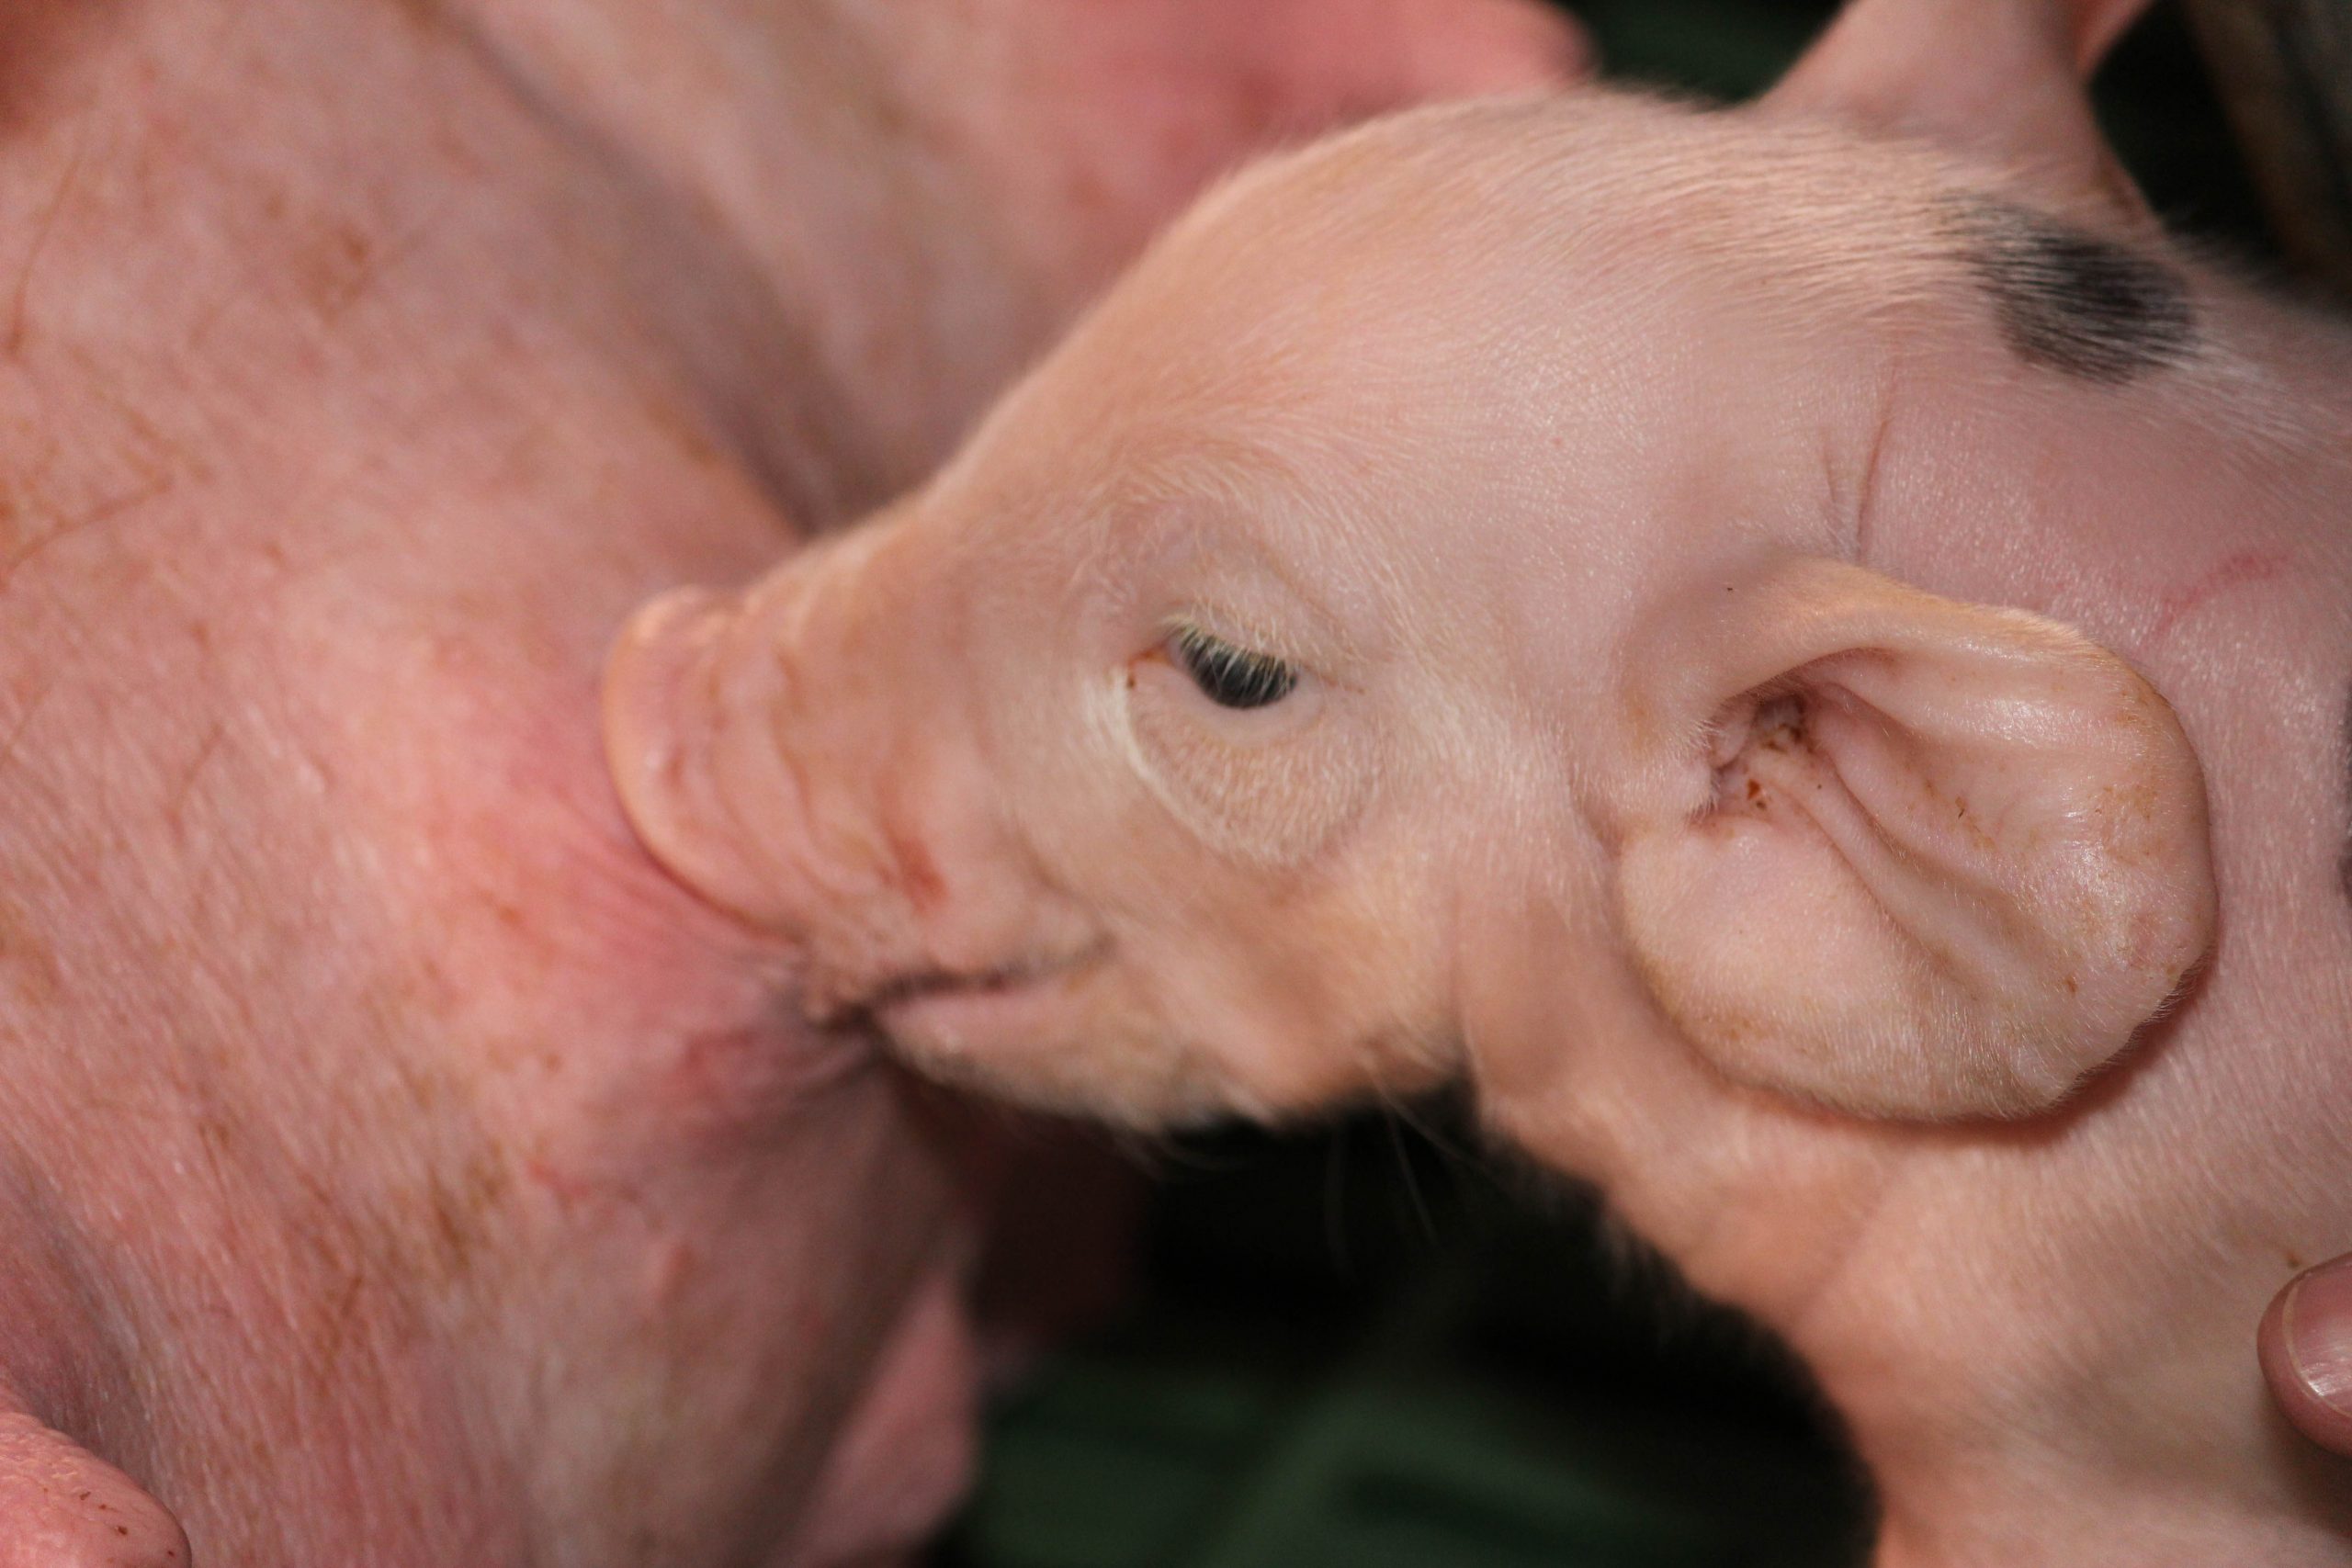 Swine Farm